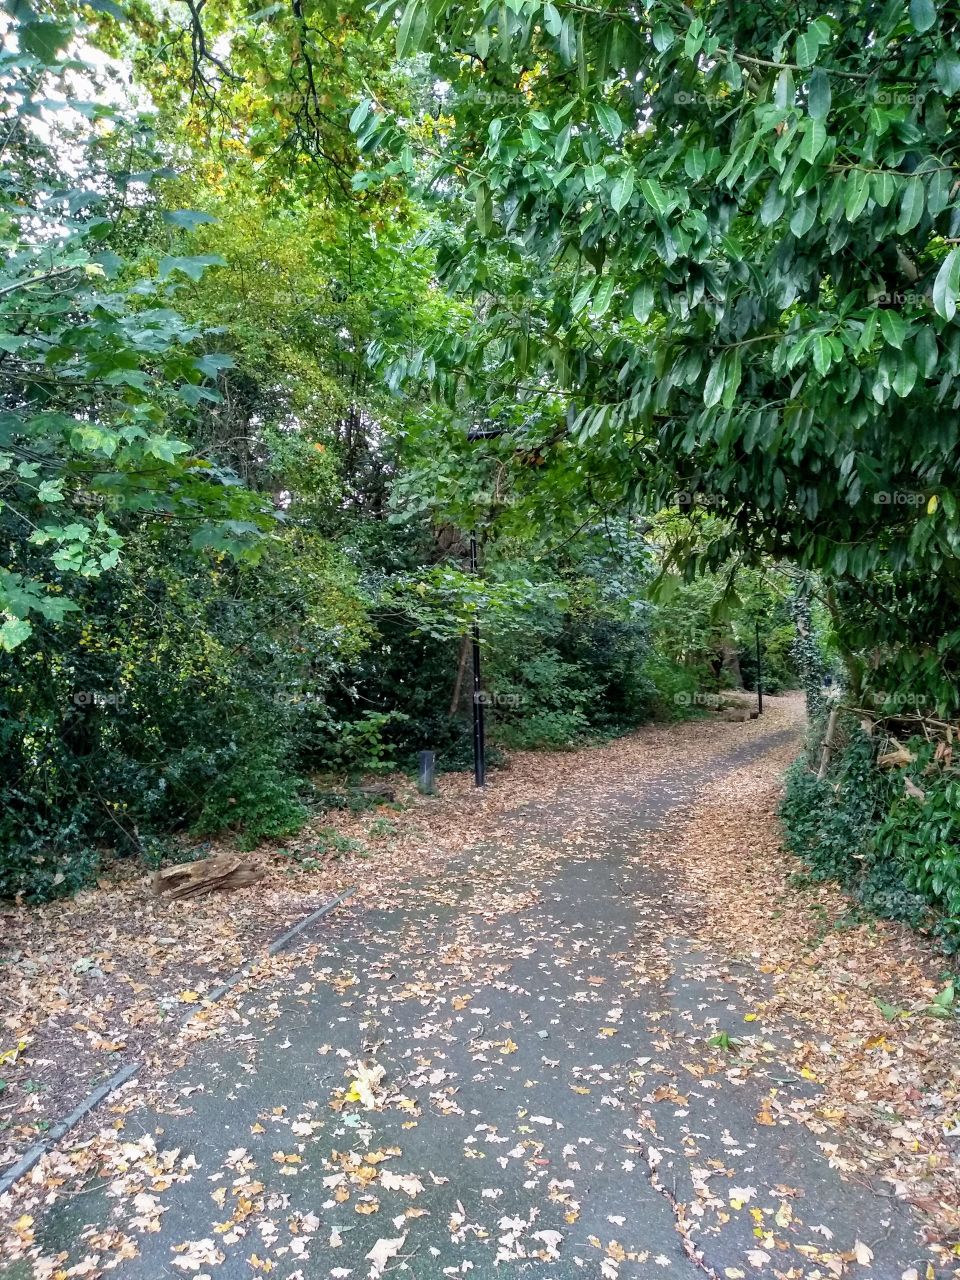 Autumn Leaves in Hanger Hill Park, London